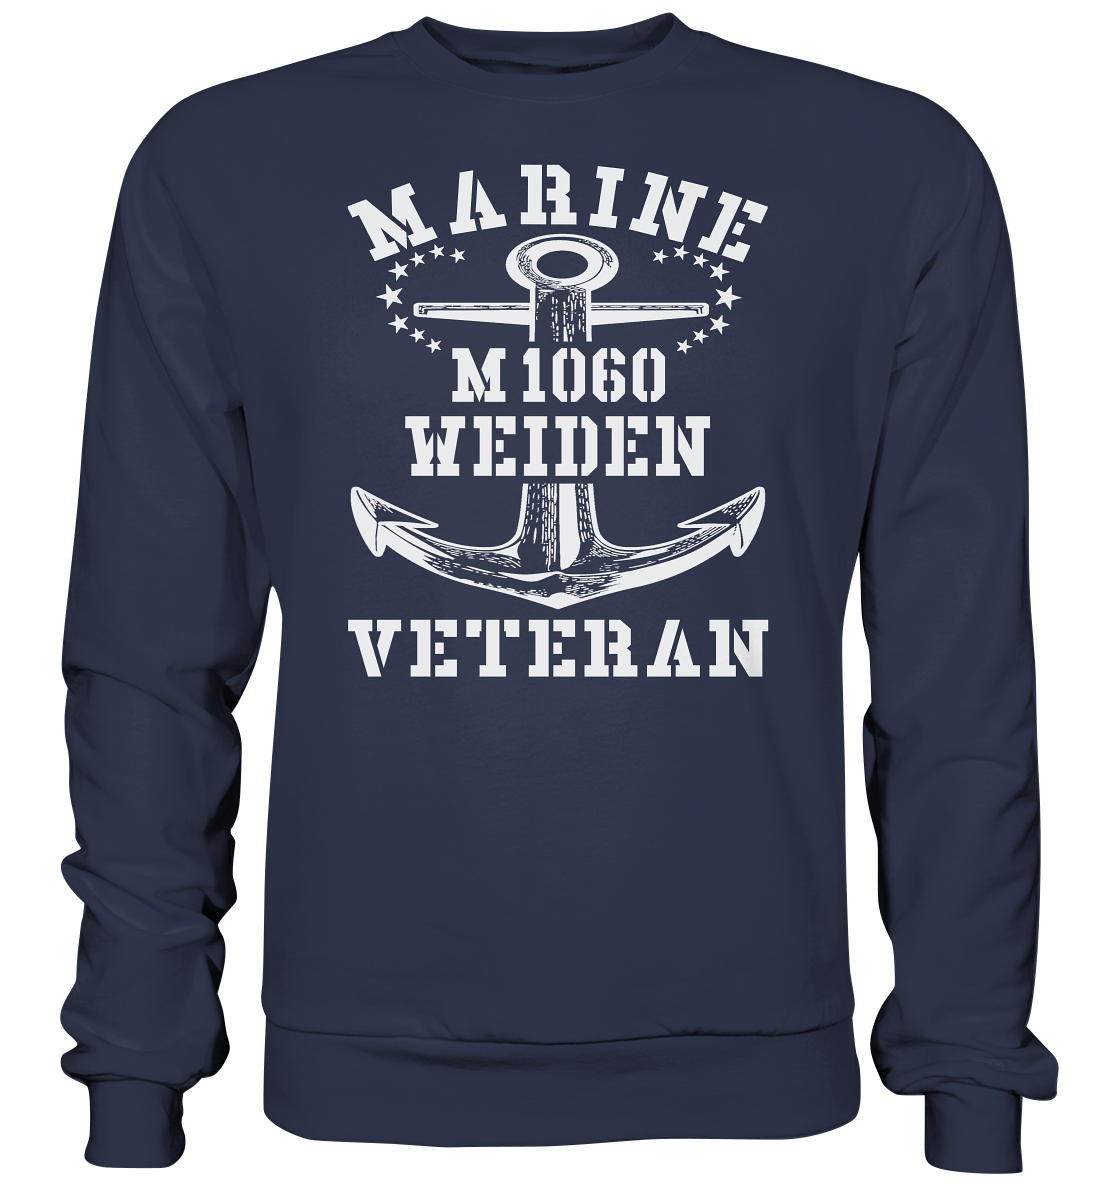 Mij.-Boot M1060 WEIDEN Marine Veteran - Premium Sweatshirt